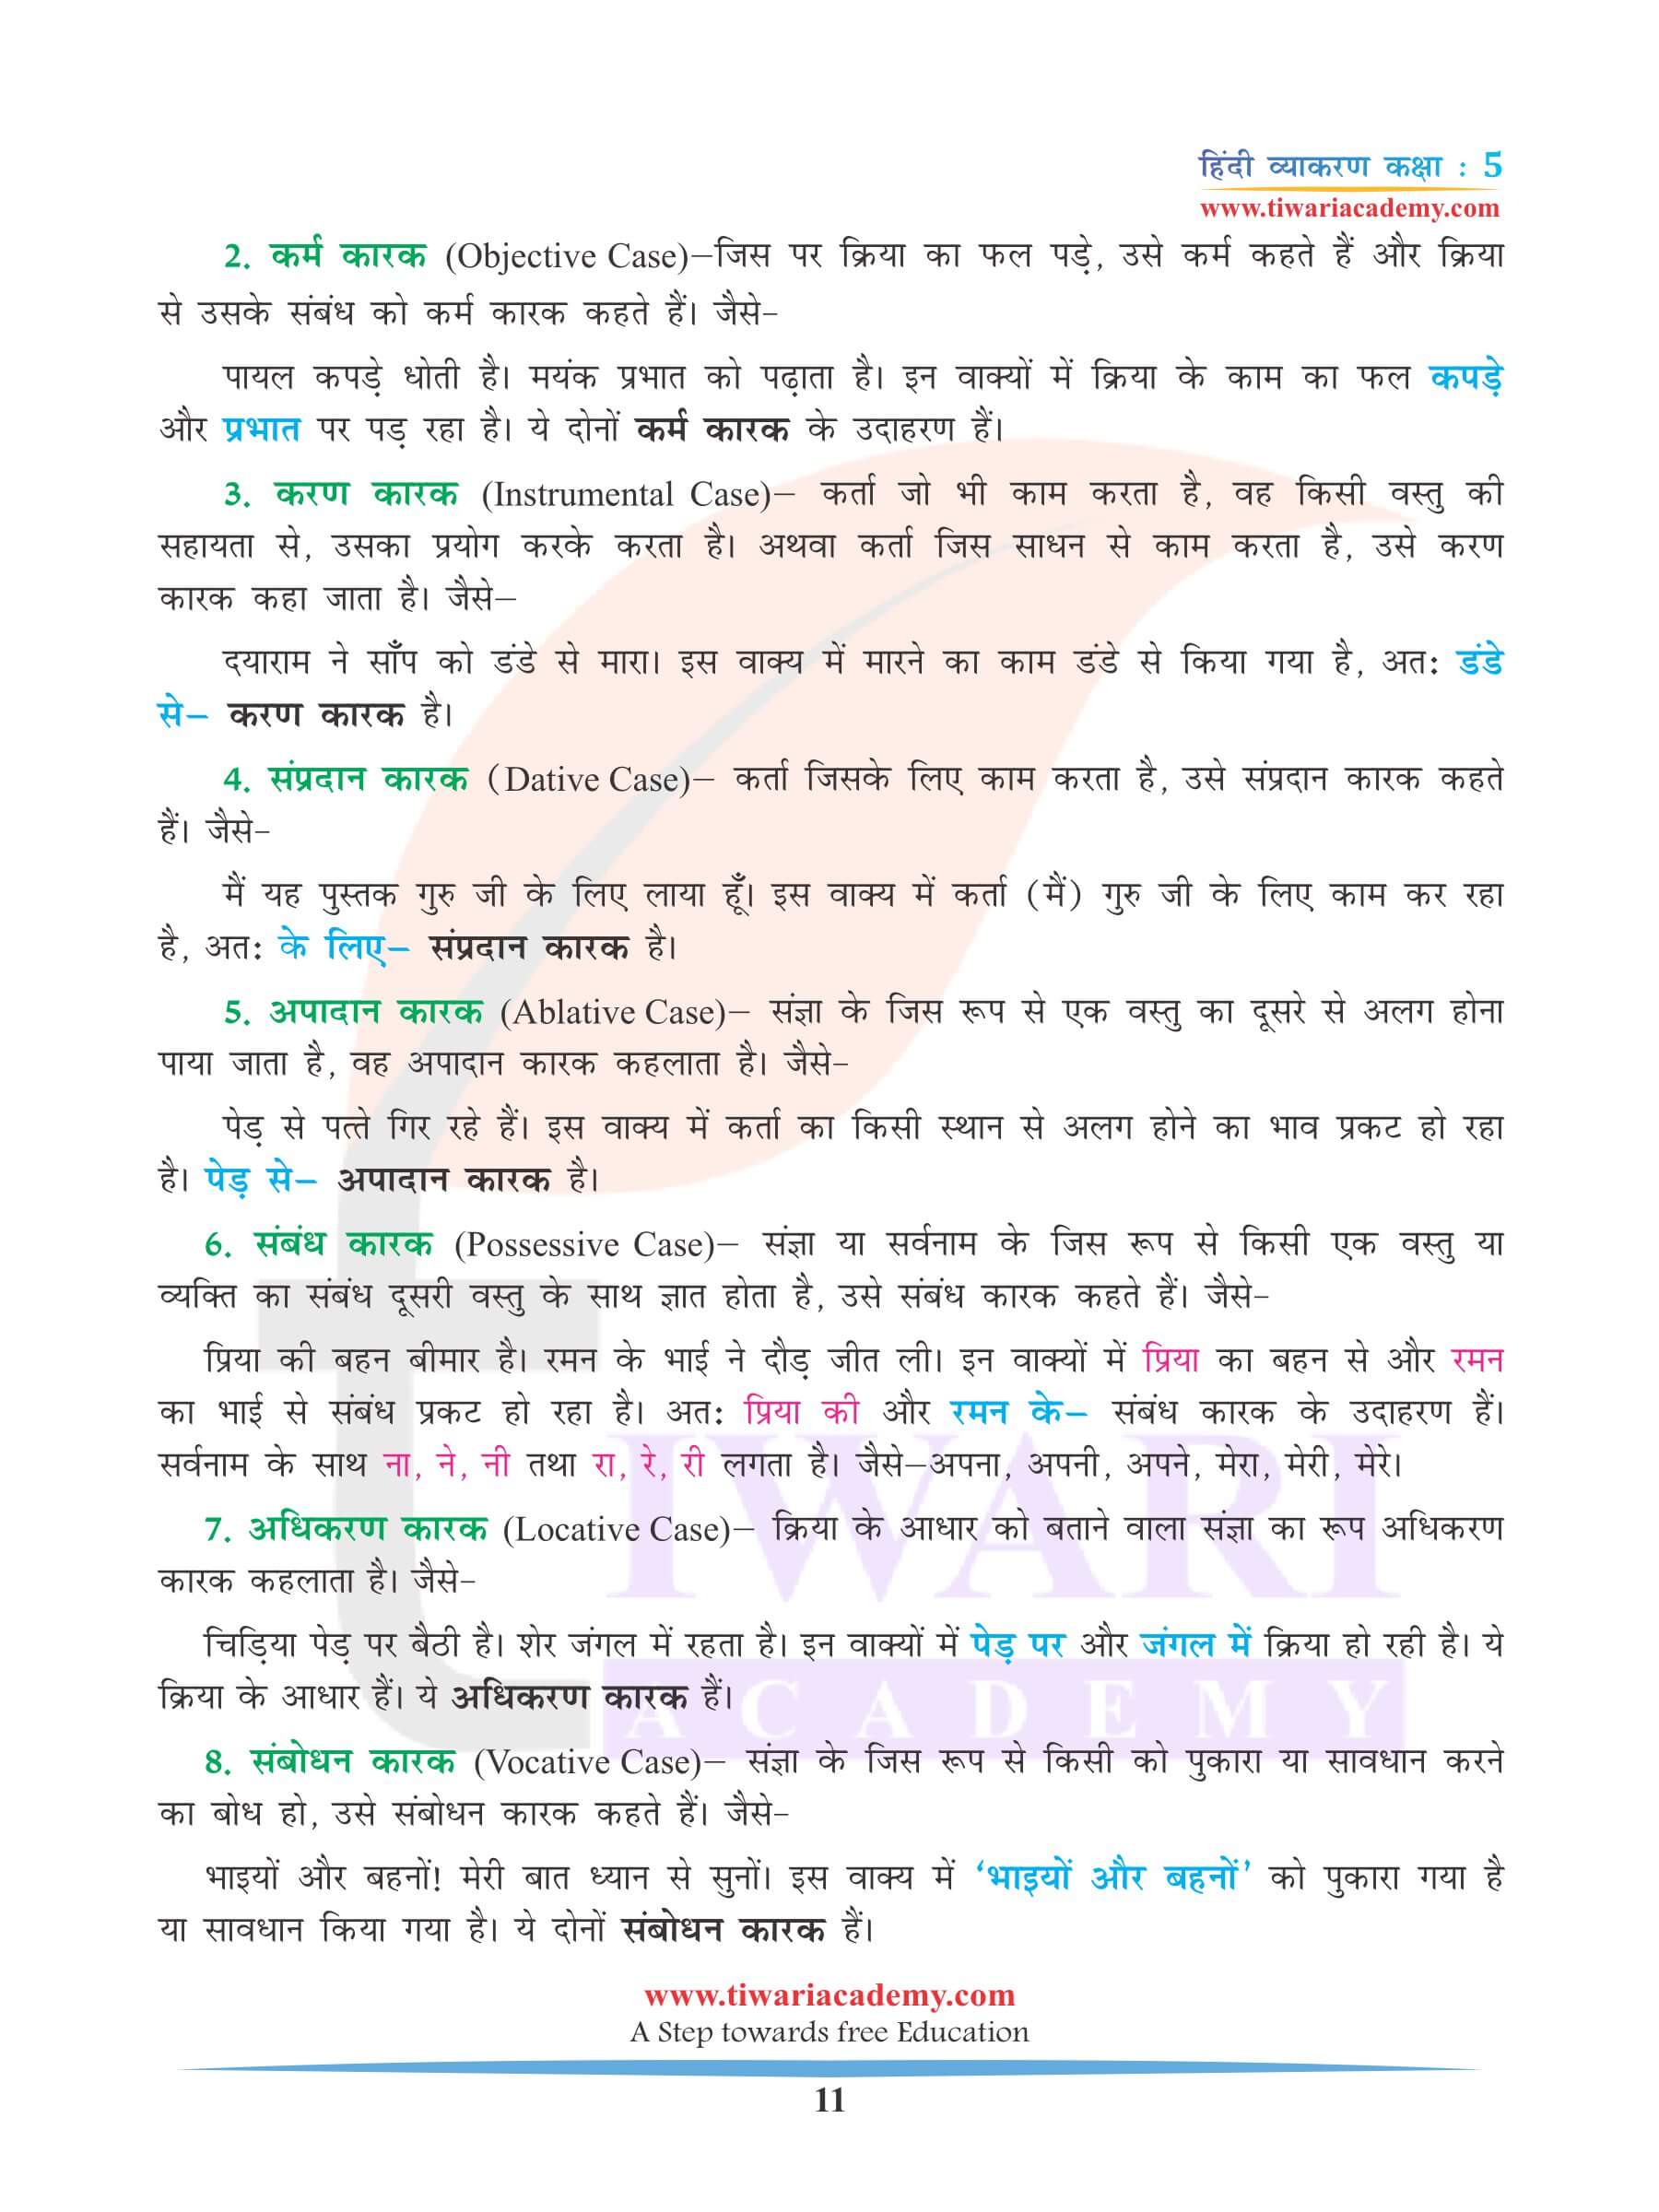 कक्षा 5 हिंदी व्याकरण कारक और उसके भेद